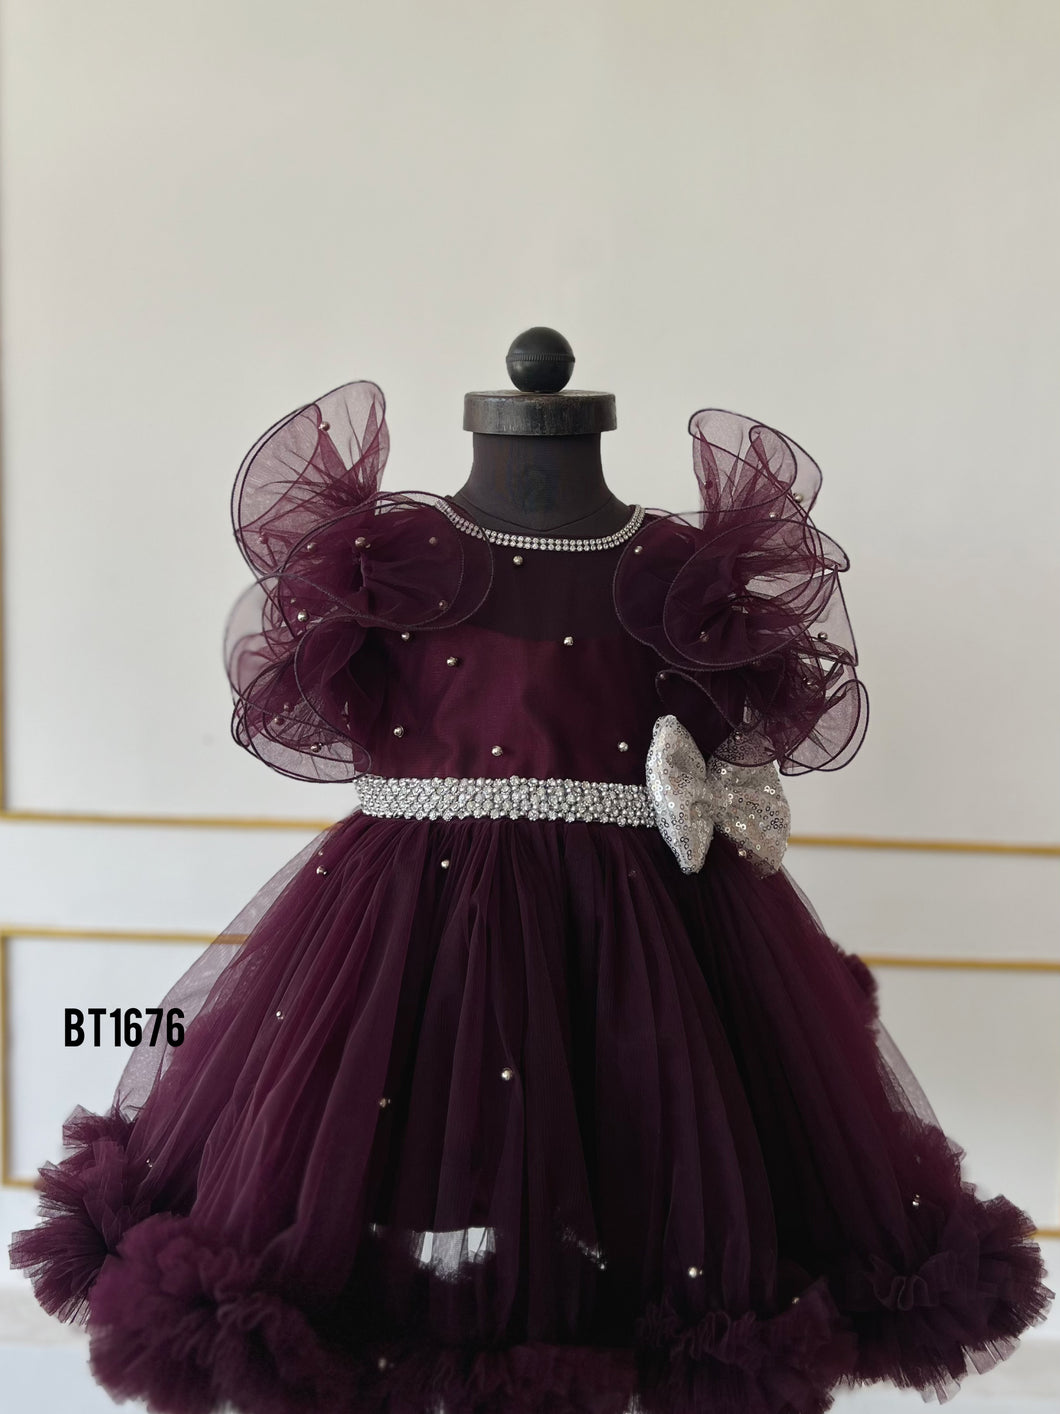 BT1676 Regal Plum Princess Tutu Dress